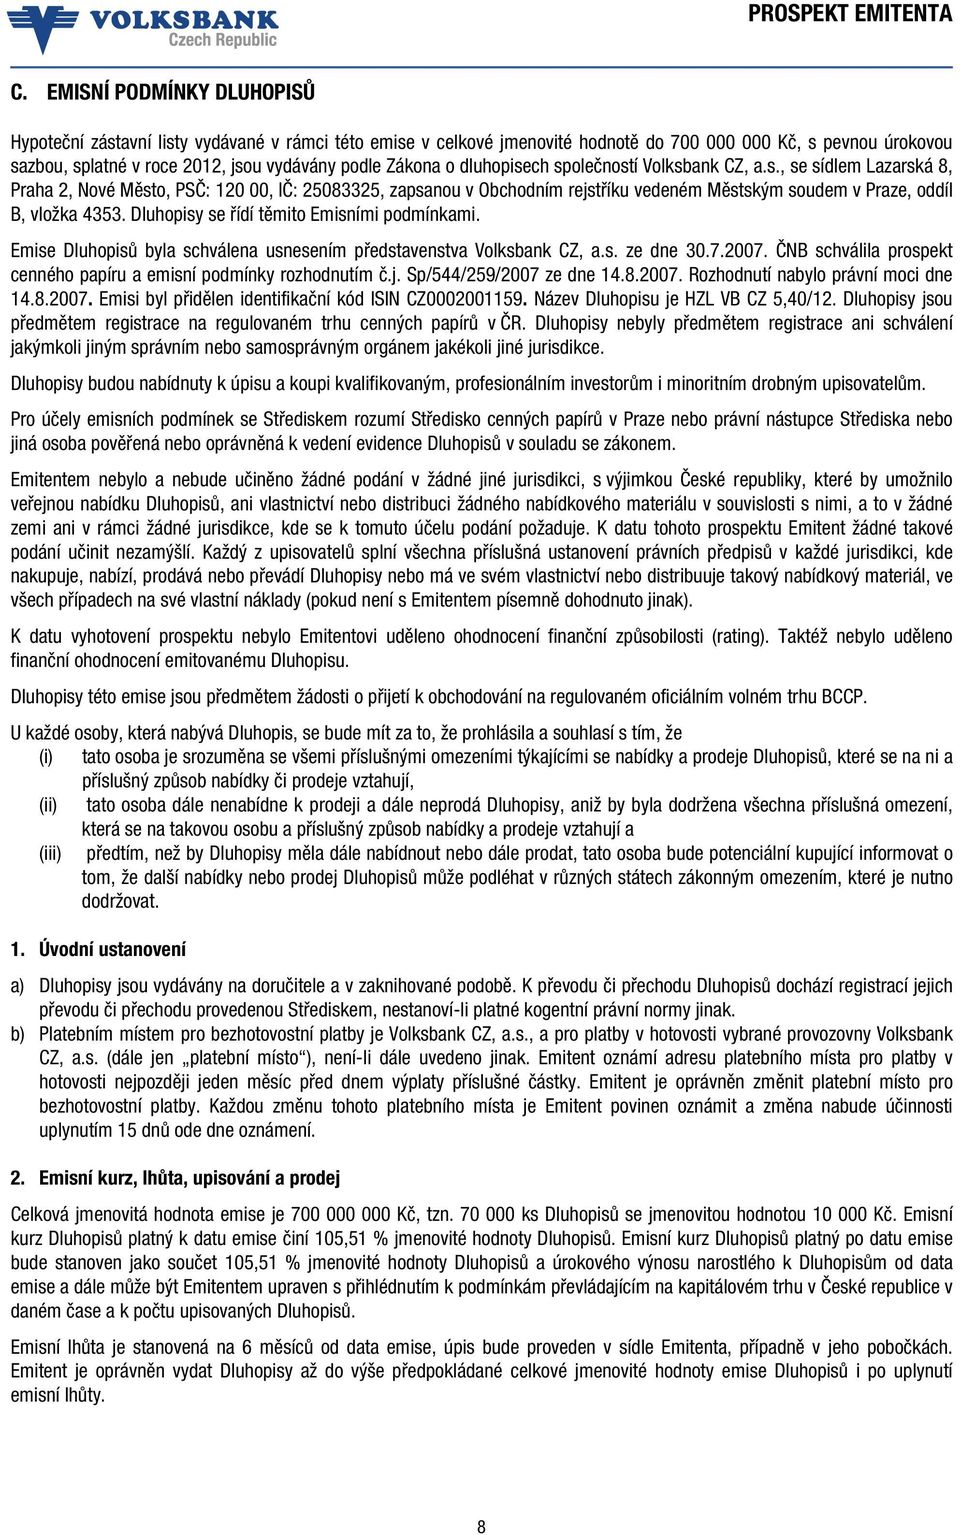 Dluhopisy se řídí těmito Emisními podmínkami. Emise Dluhopisů byla schválena usnesením představenstva Volksbank CZ, a.s. ze dne 30.7.2007.